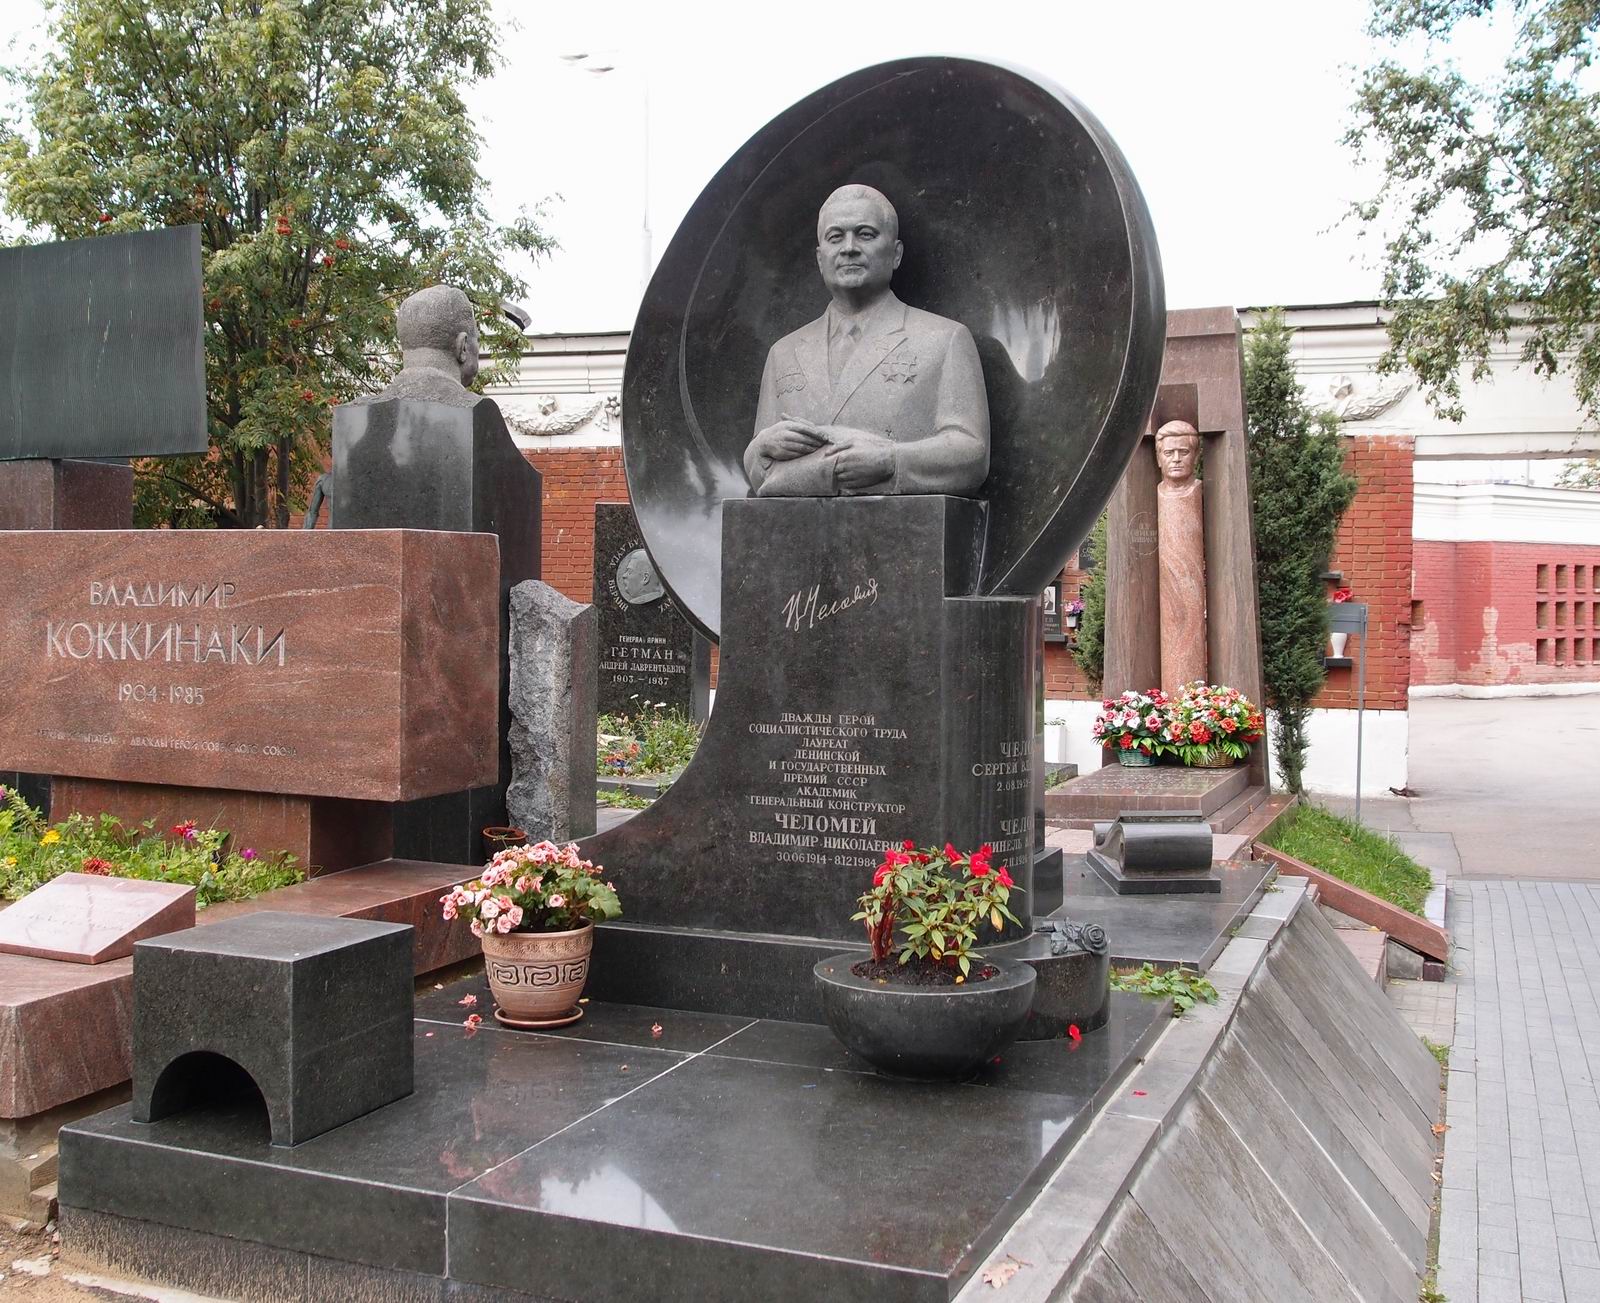 Памятник на могиле Челомея В.Н. (1914–1984), ск. В.Сонин, на Новодевичьем кладбище (7–21–9). Нажмите левую кнопку мыши чтобы увидеть фрагмент памятника.